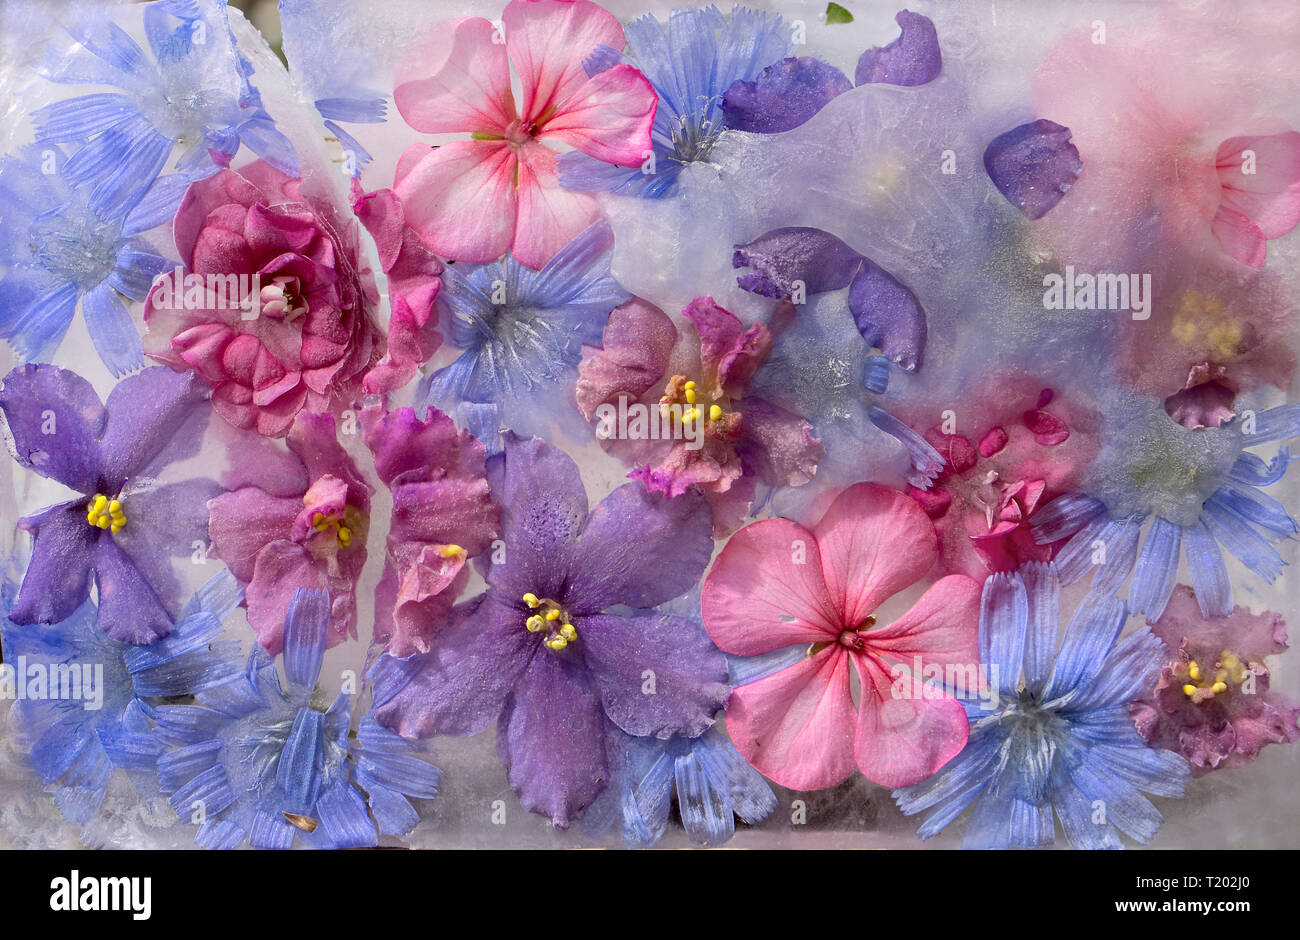 Fondo de violeta, balsamine, geranio, achicoria (succory) flor en cubo de hielo con burbujas de aire Foto de stock